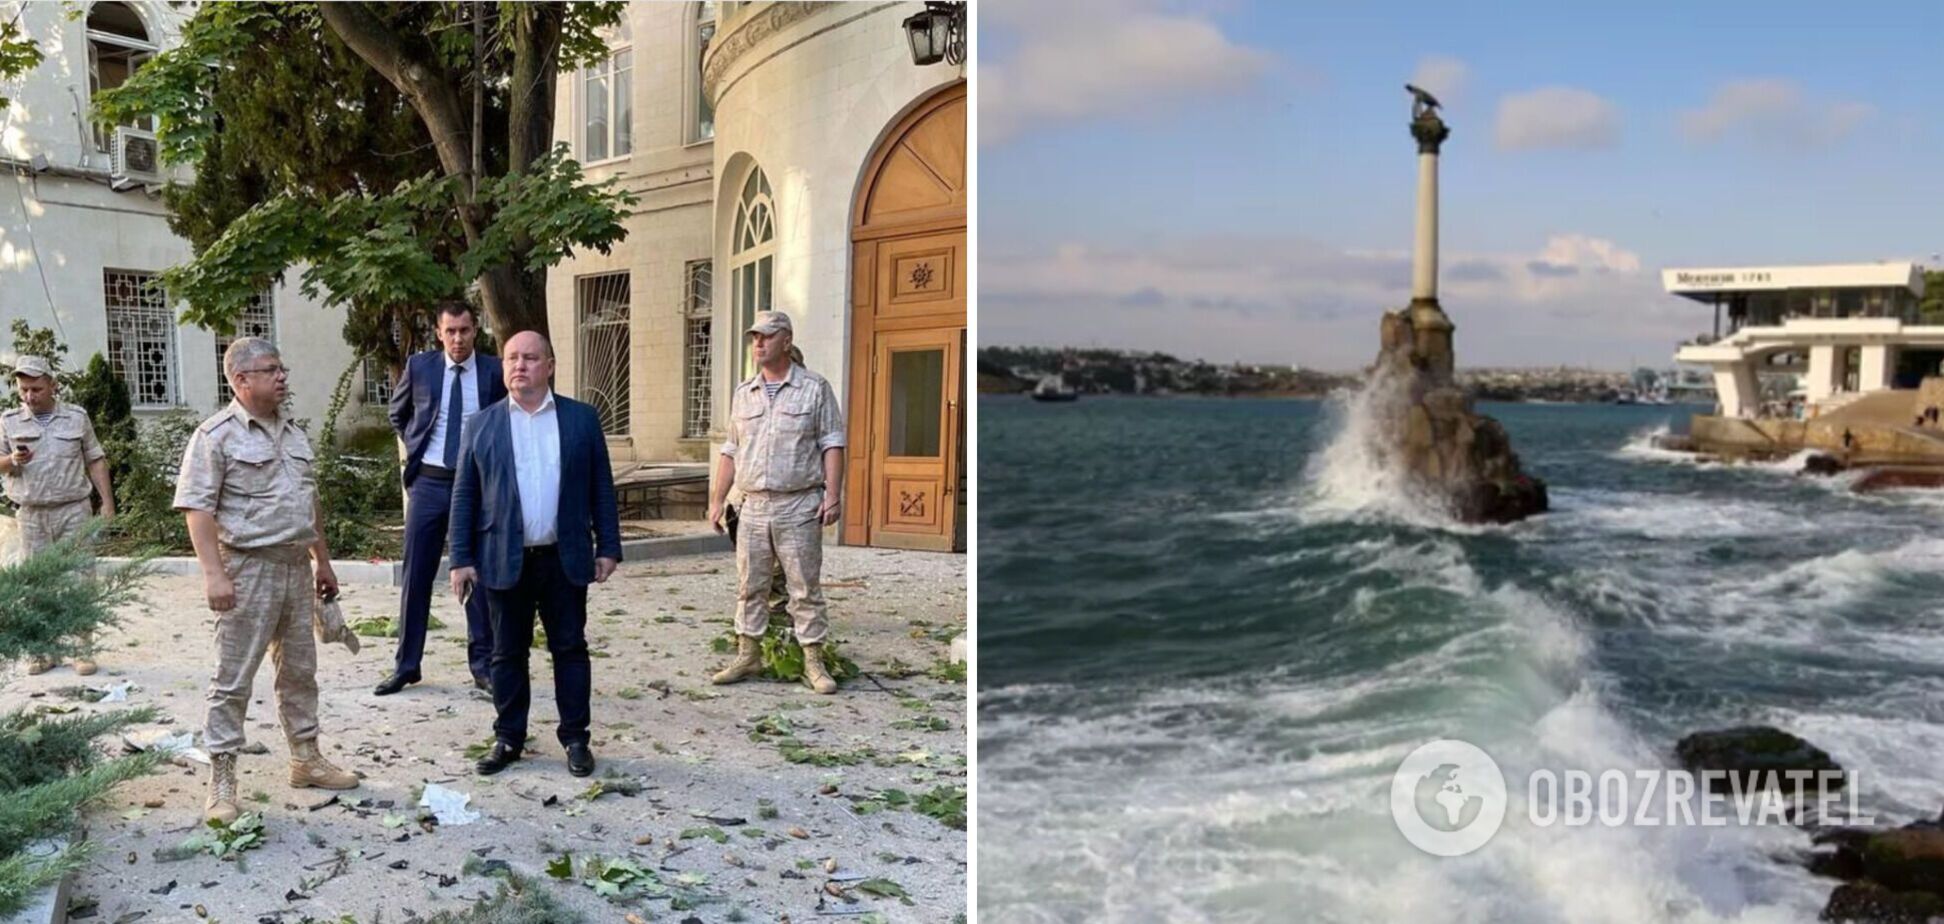 Атака на штаб Черноморской флотилии в Севастополе — шоу скучных симулянтов